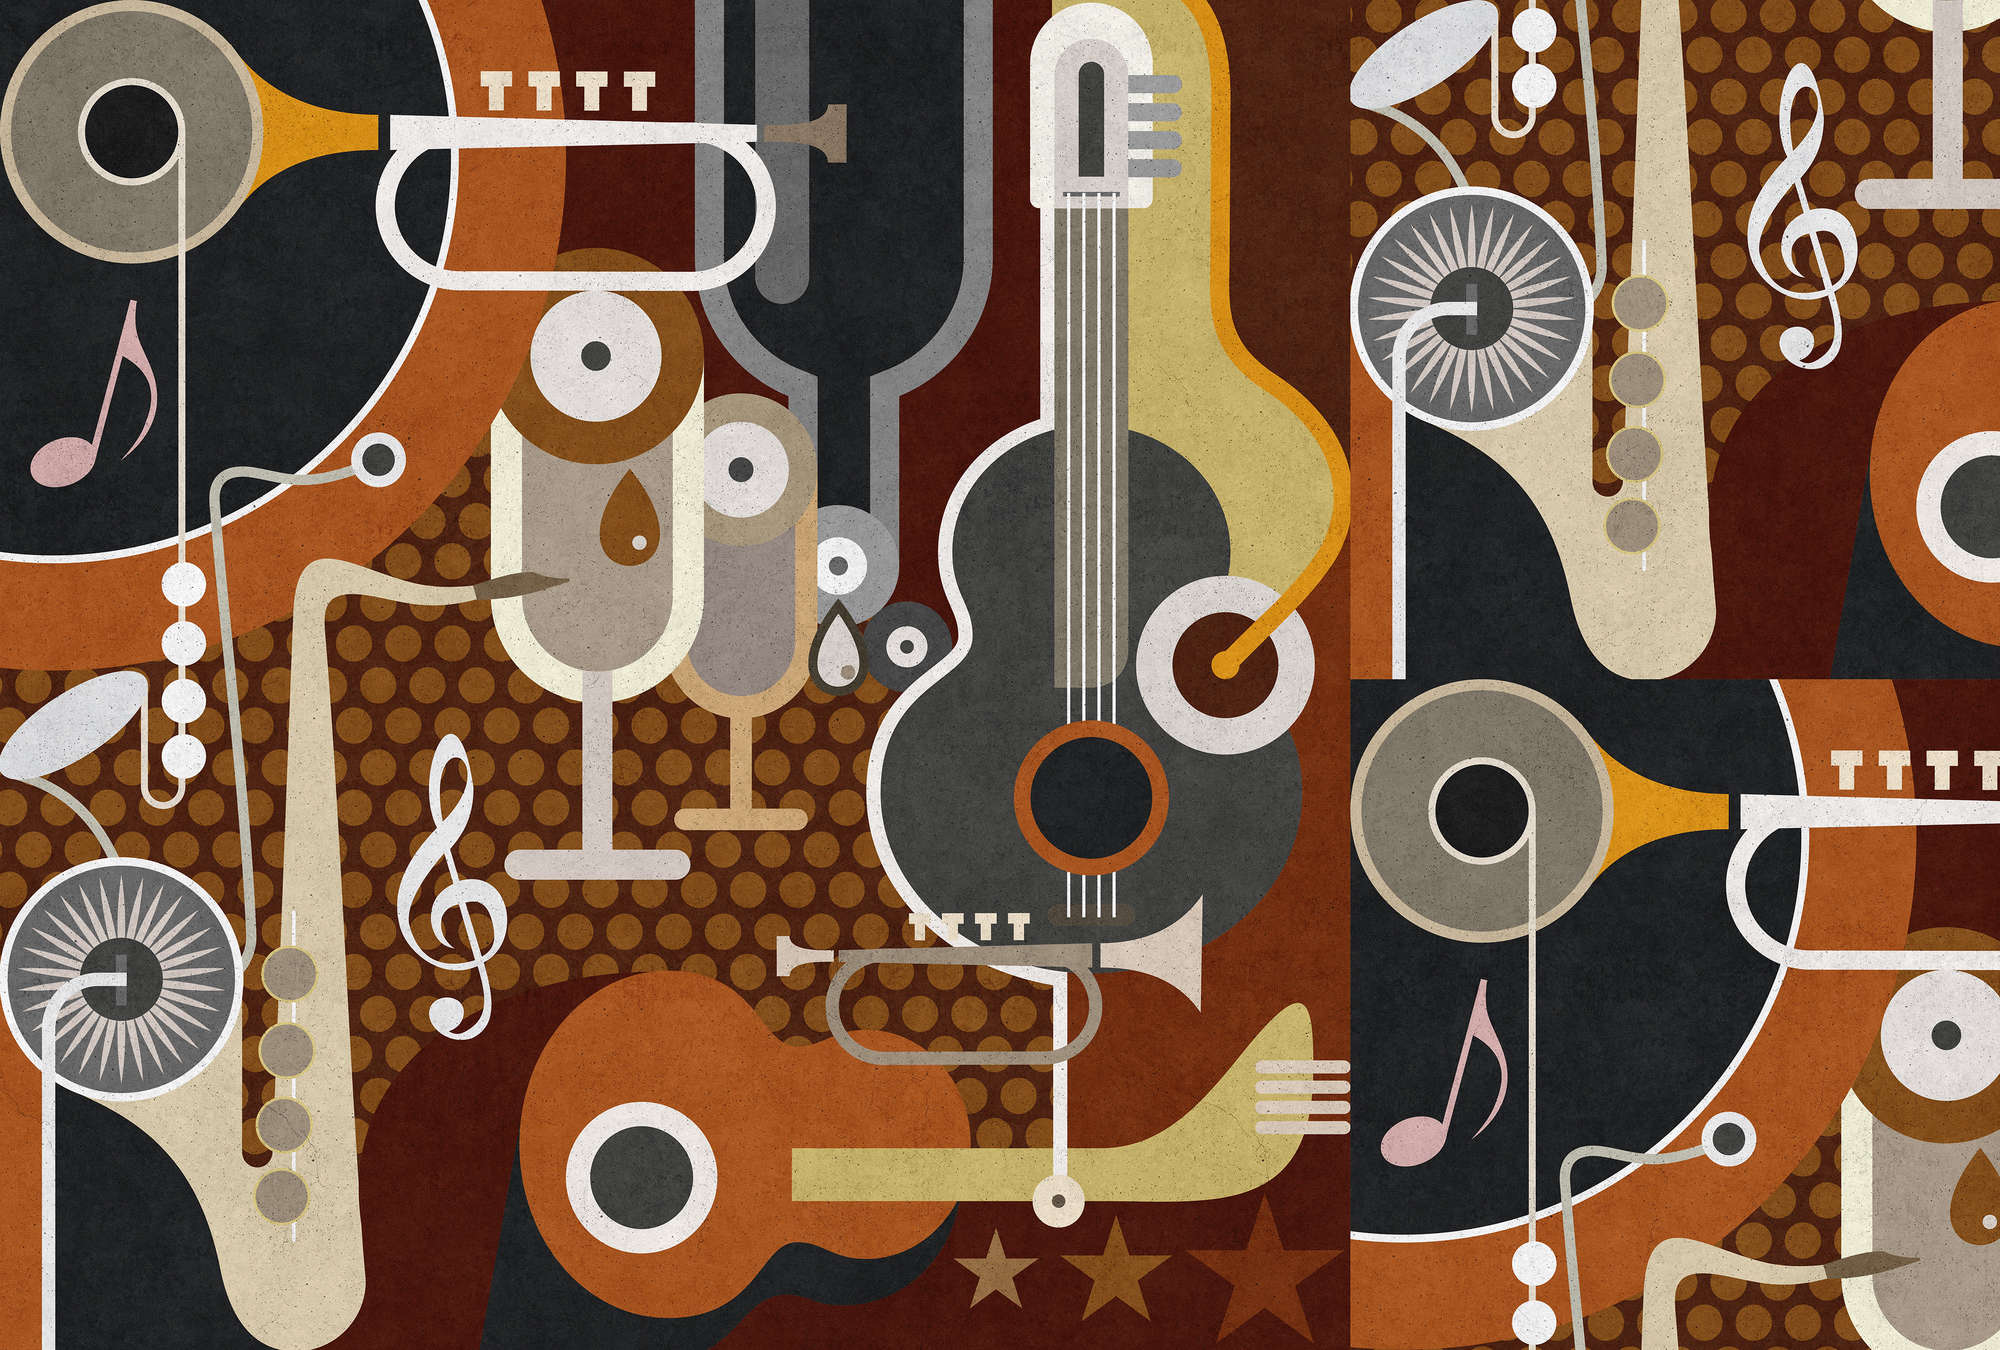             Wall of sound 1 - Papier peint texture béton, instruments de musique abstraits - beige, marron | intissé lisse nacré
        